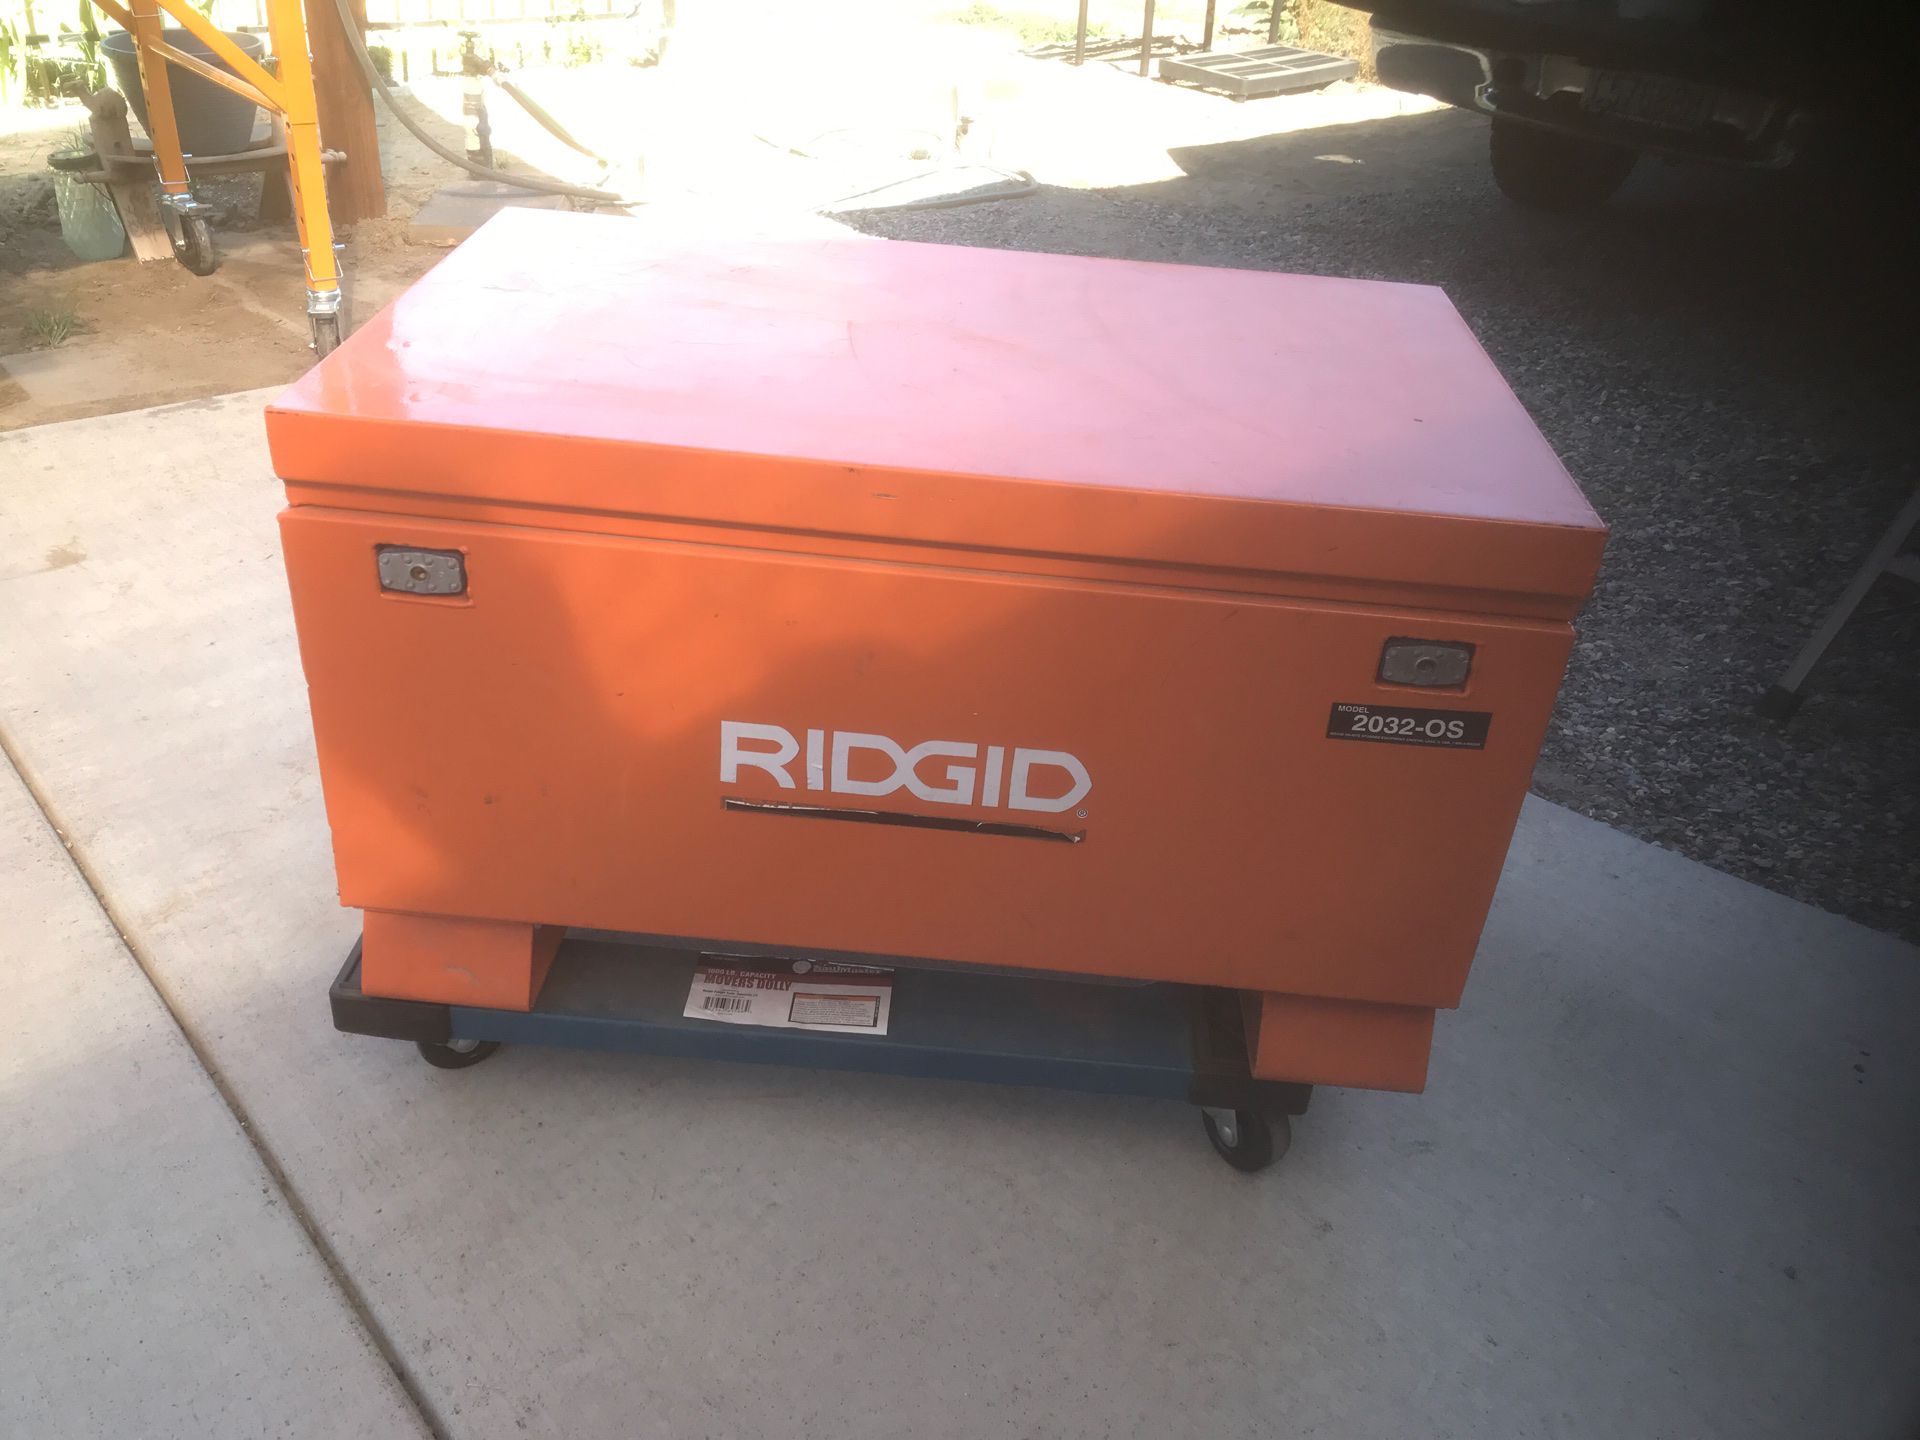 Ridgid portable tool box